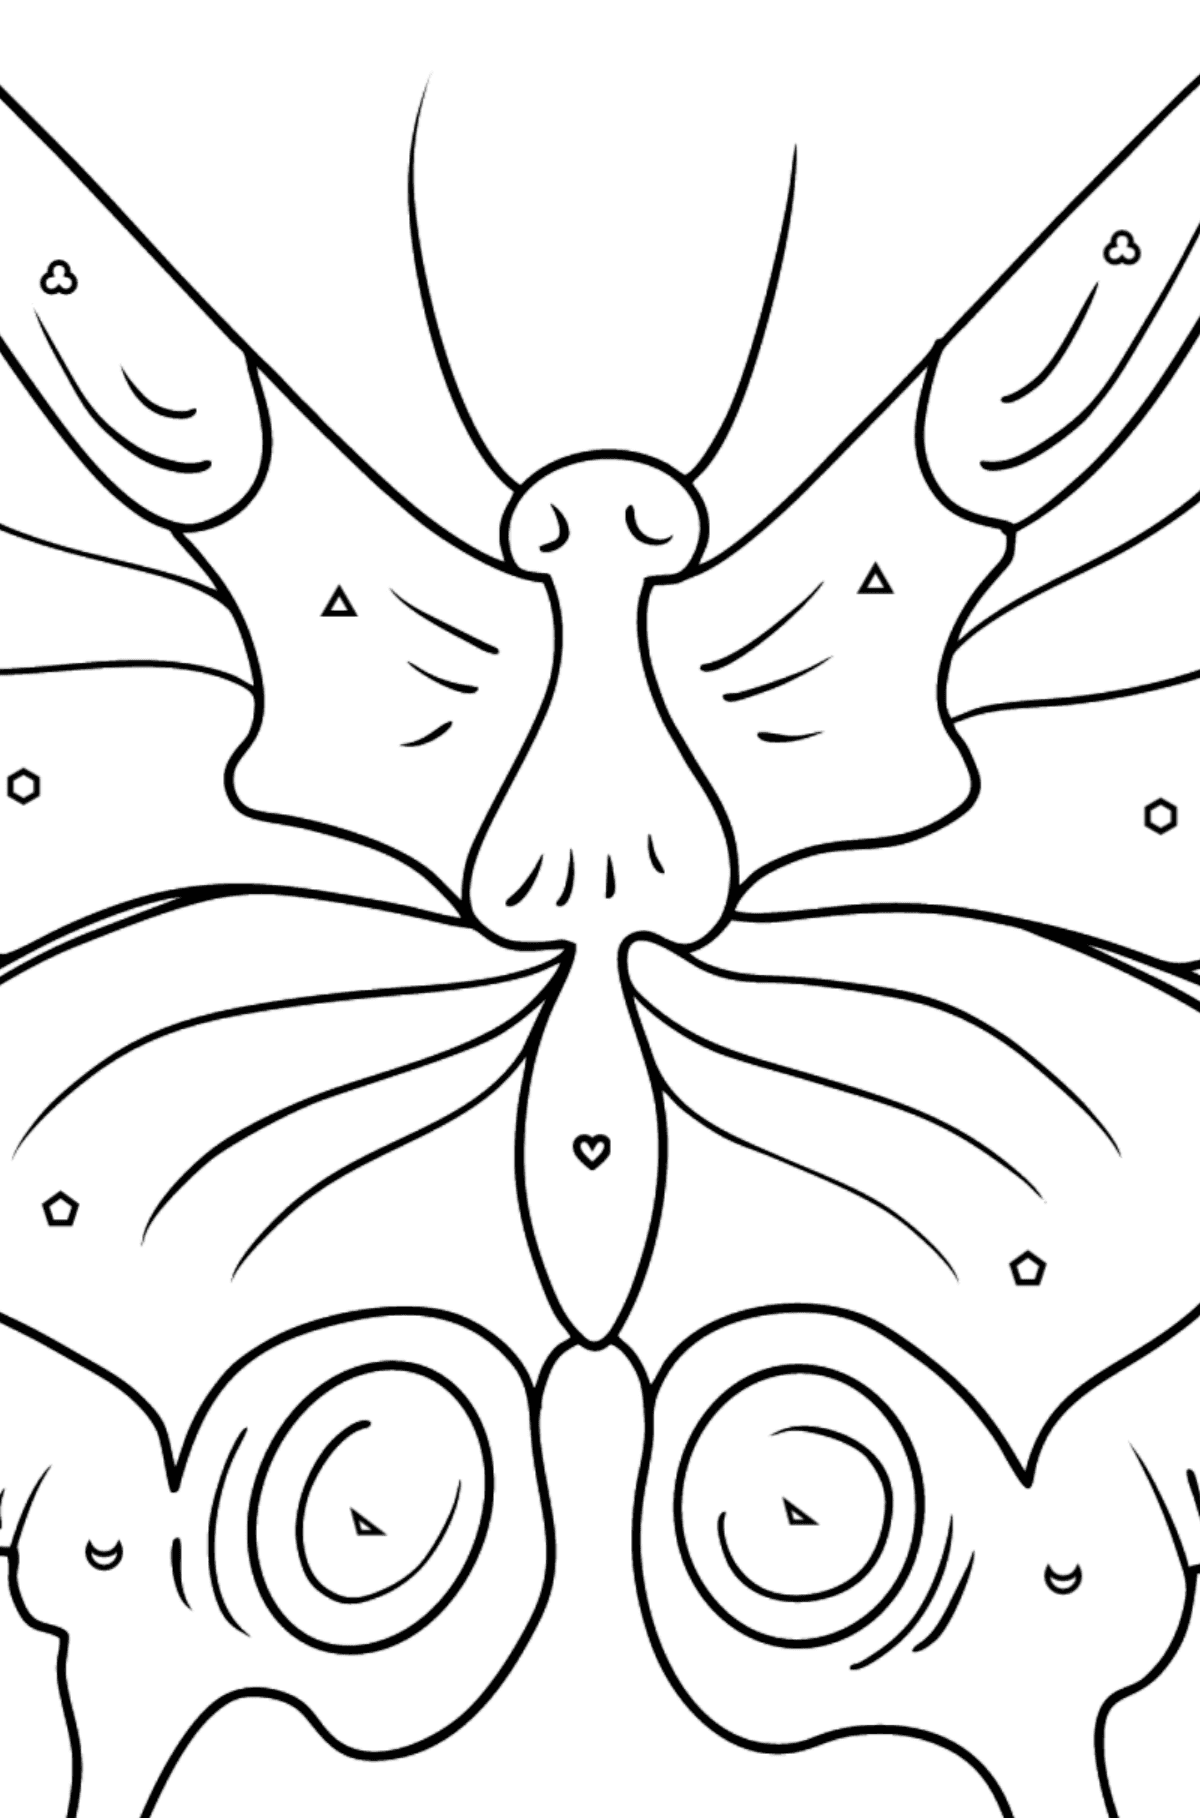 Dibujo de Mariposa cola de golondrina para colorear - Colorear por Formas Geométricas para Niños